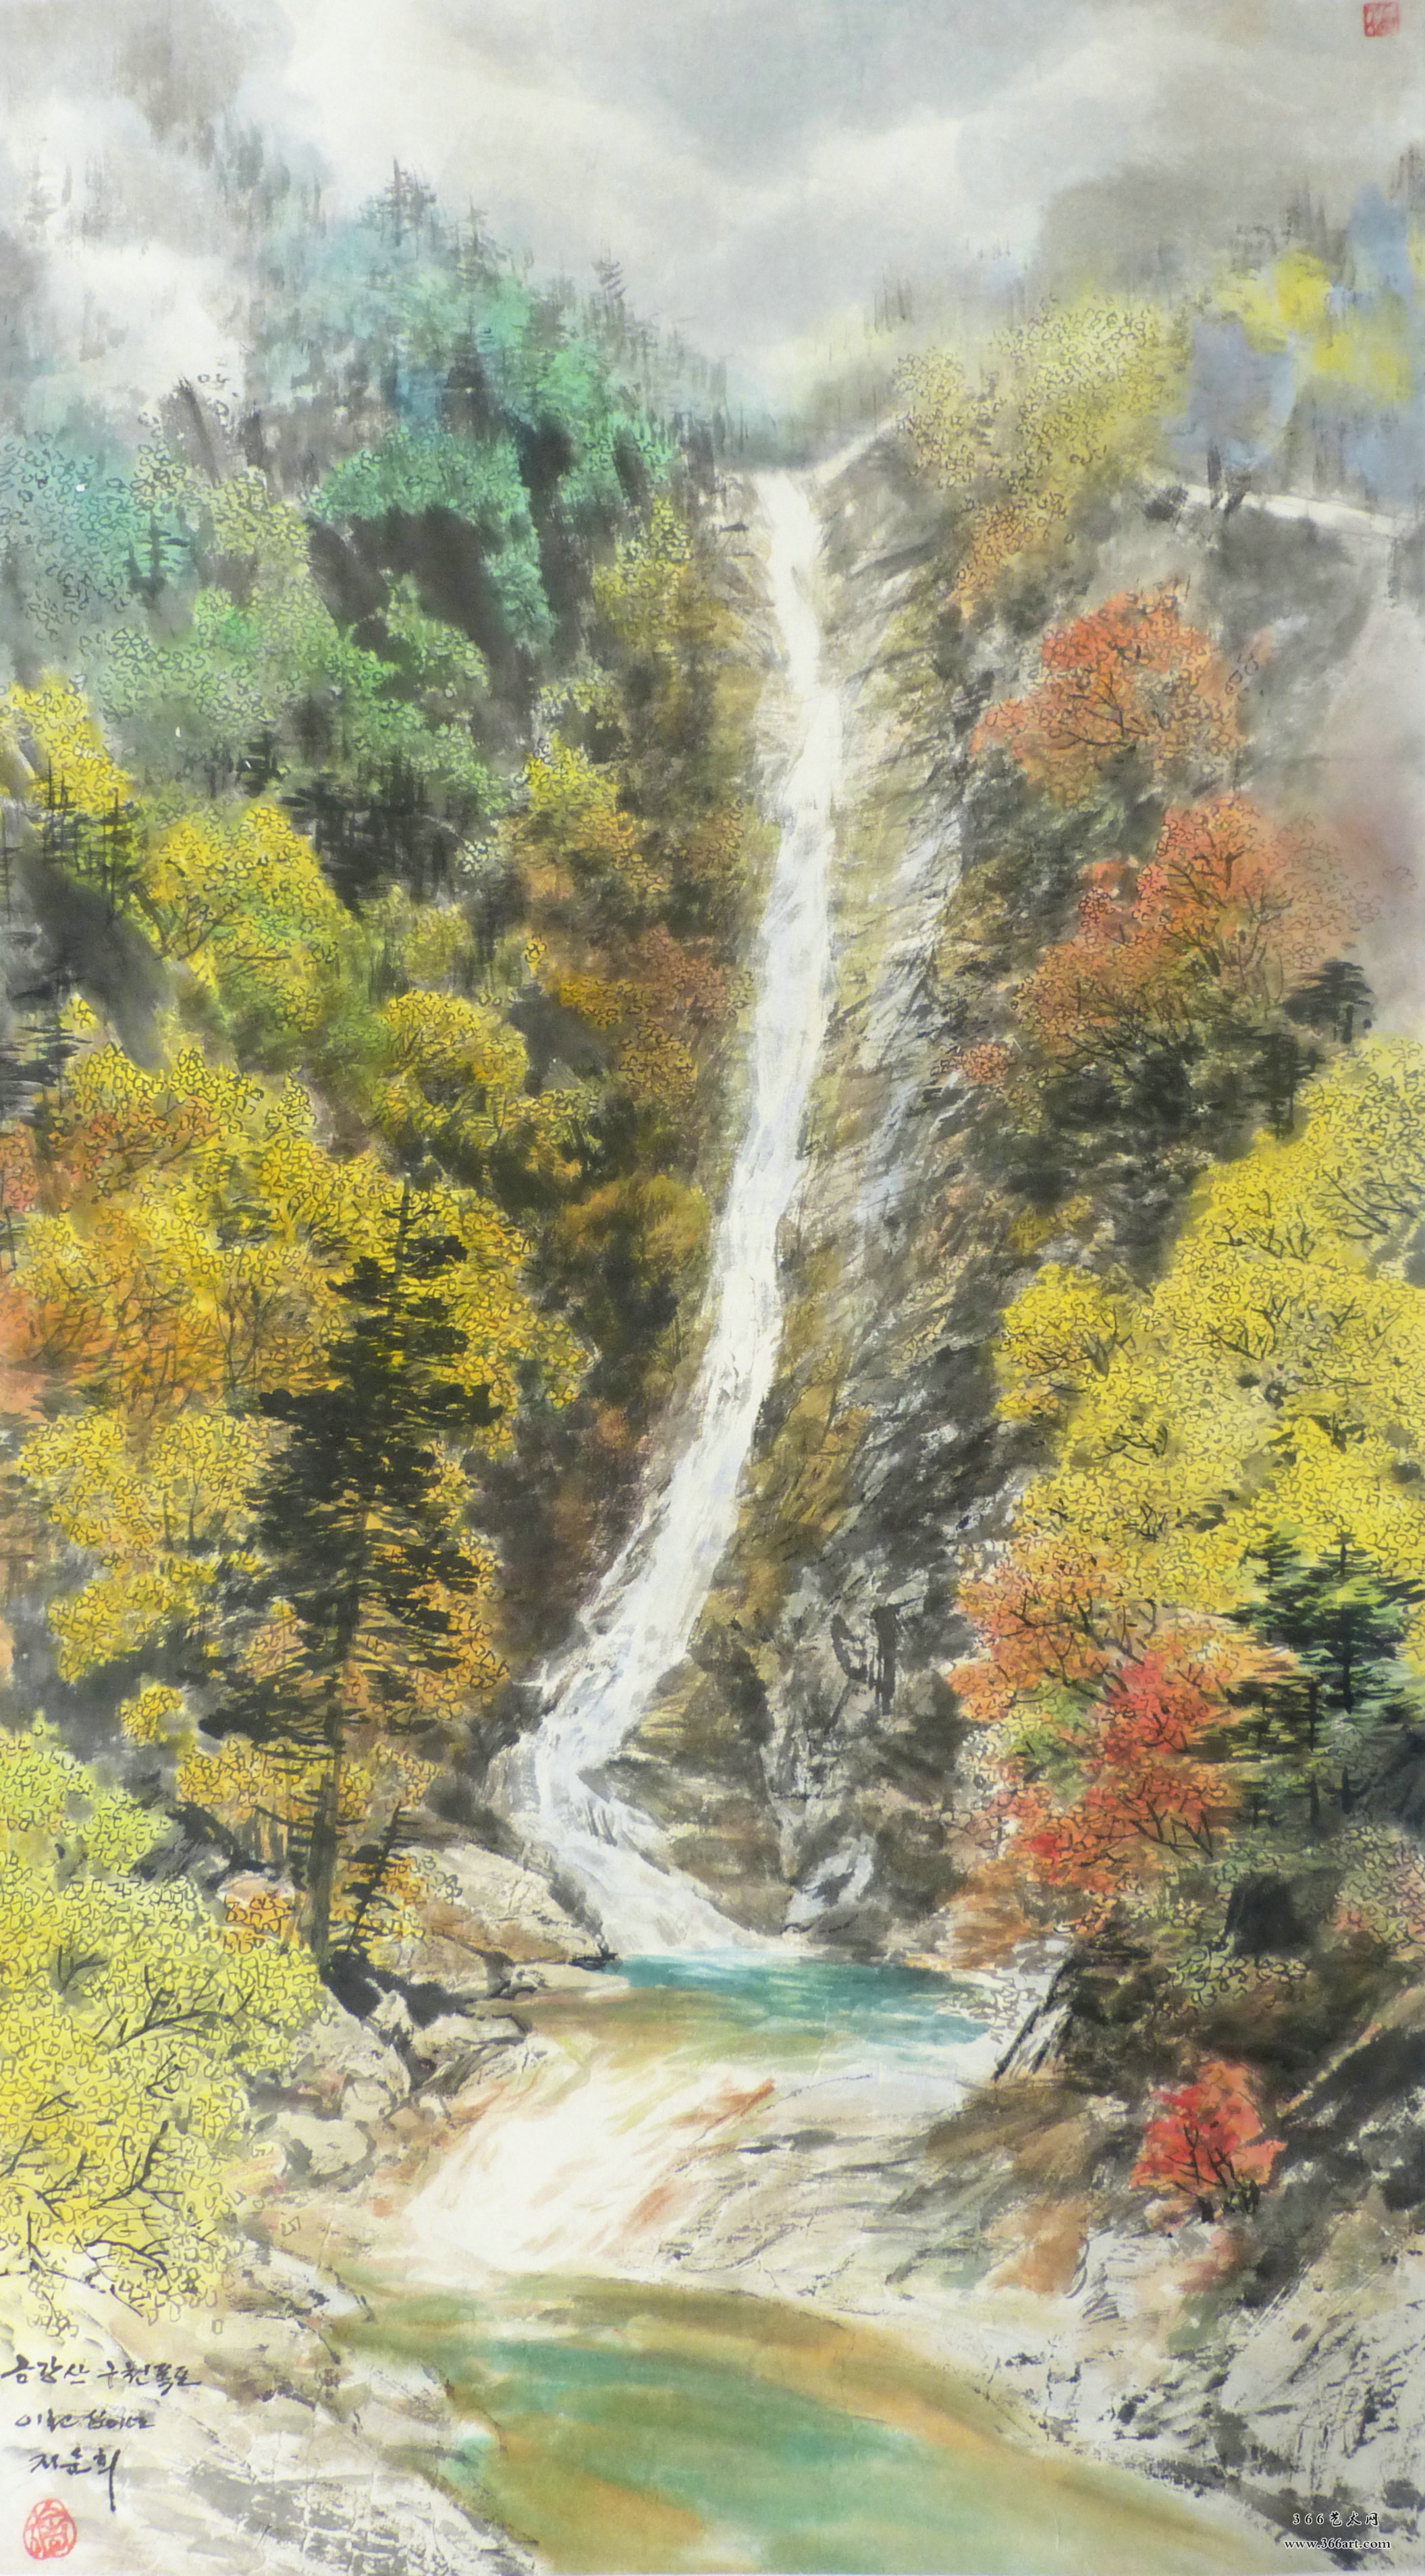 【朝鲜画】池顺姬 金刚山九天瀑布 2012年 67 x 120.5cm